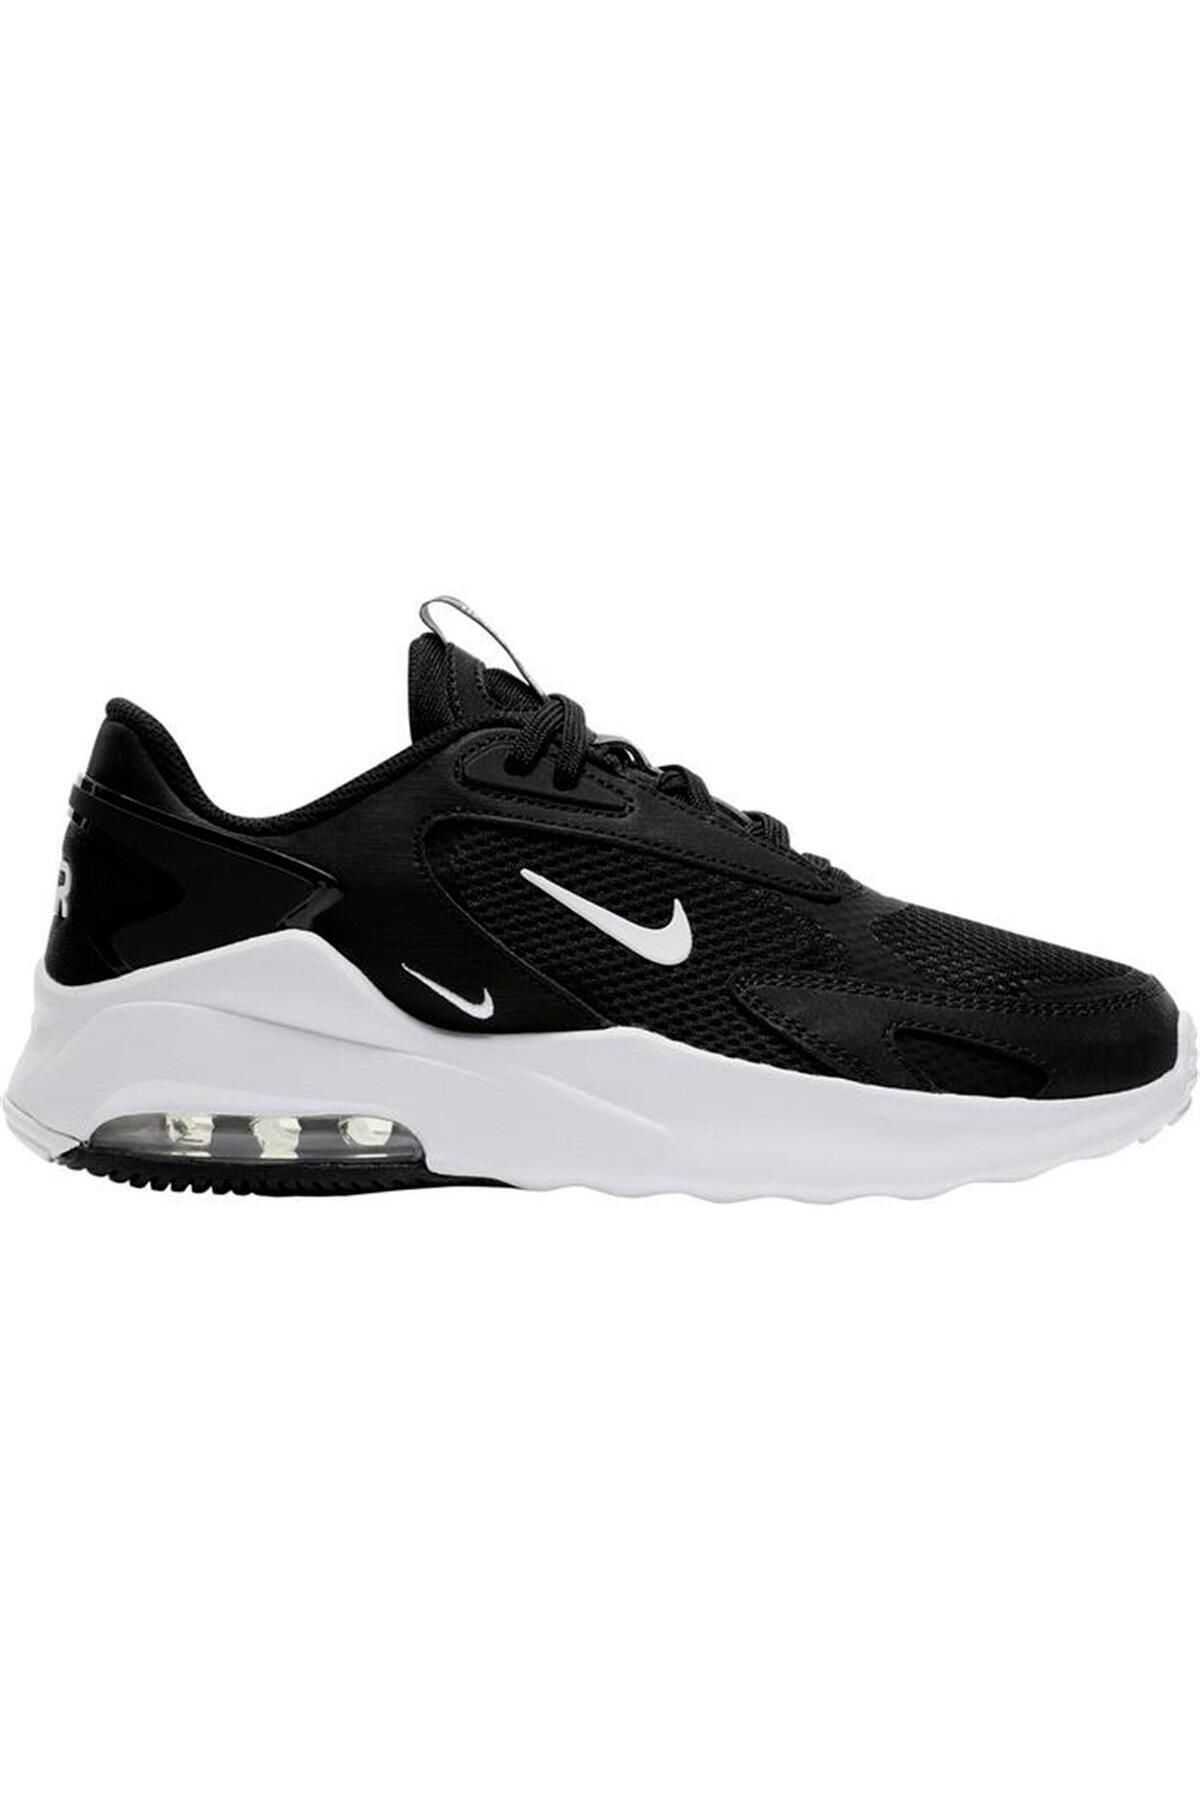 Nike Wmns Air Max Bolt Kadın Siyah Günlük Stil Ayakkabı Cu4152-001